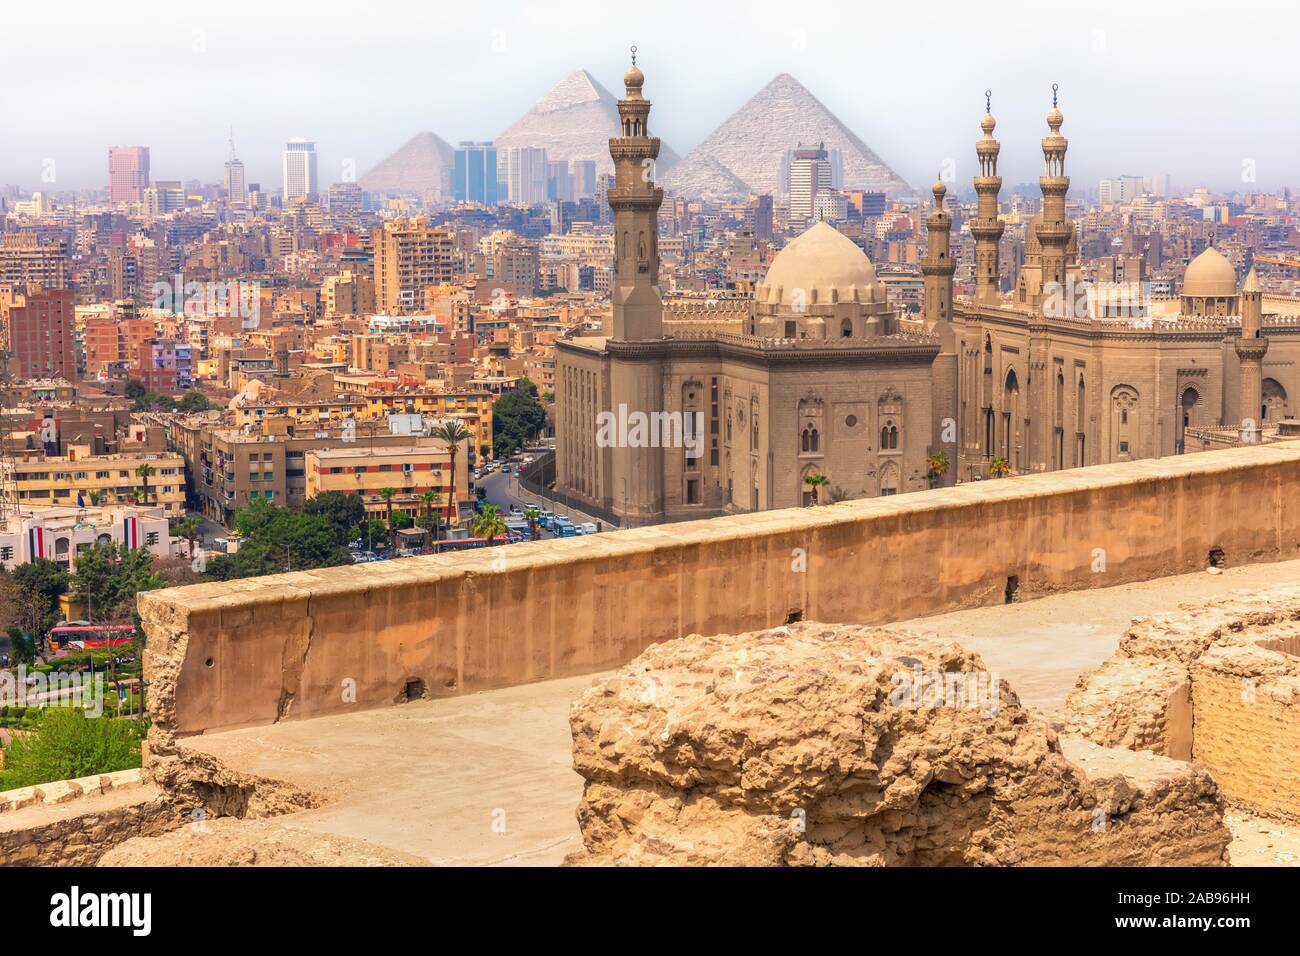 Vista de El Cairo, el Mosque-Madrassa del Sultán Hassan y las pirámides de Egipto. Foto de stock